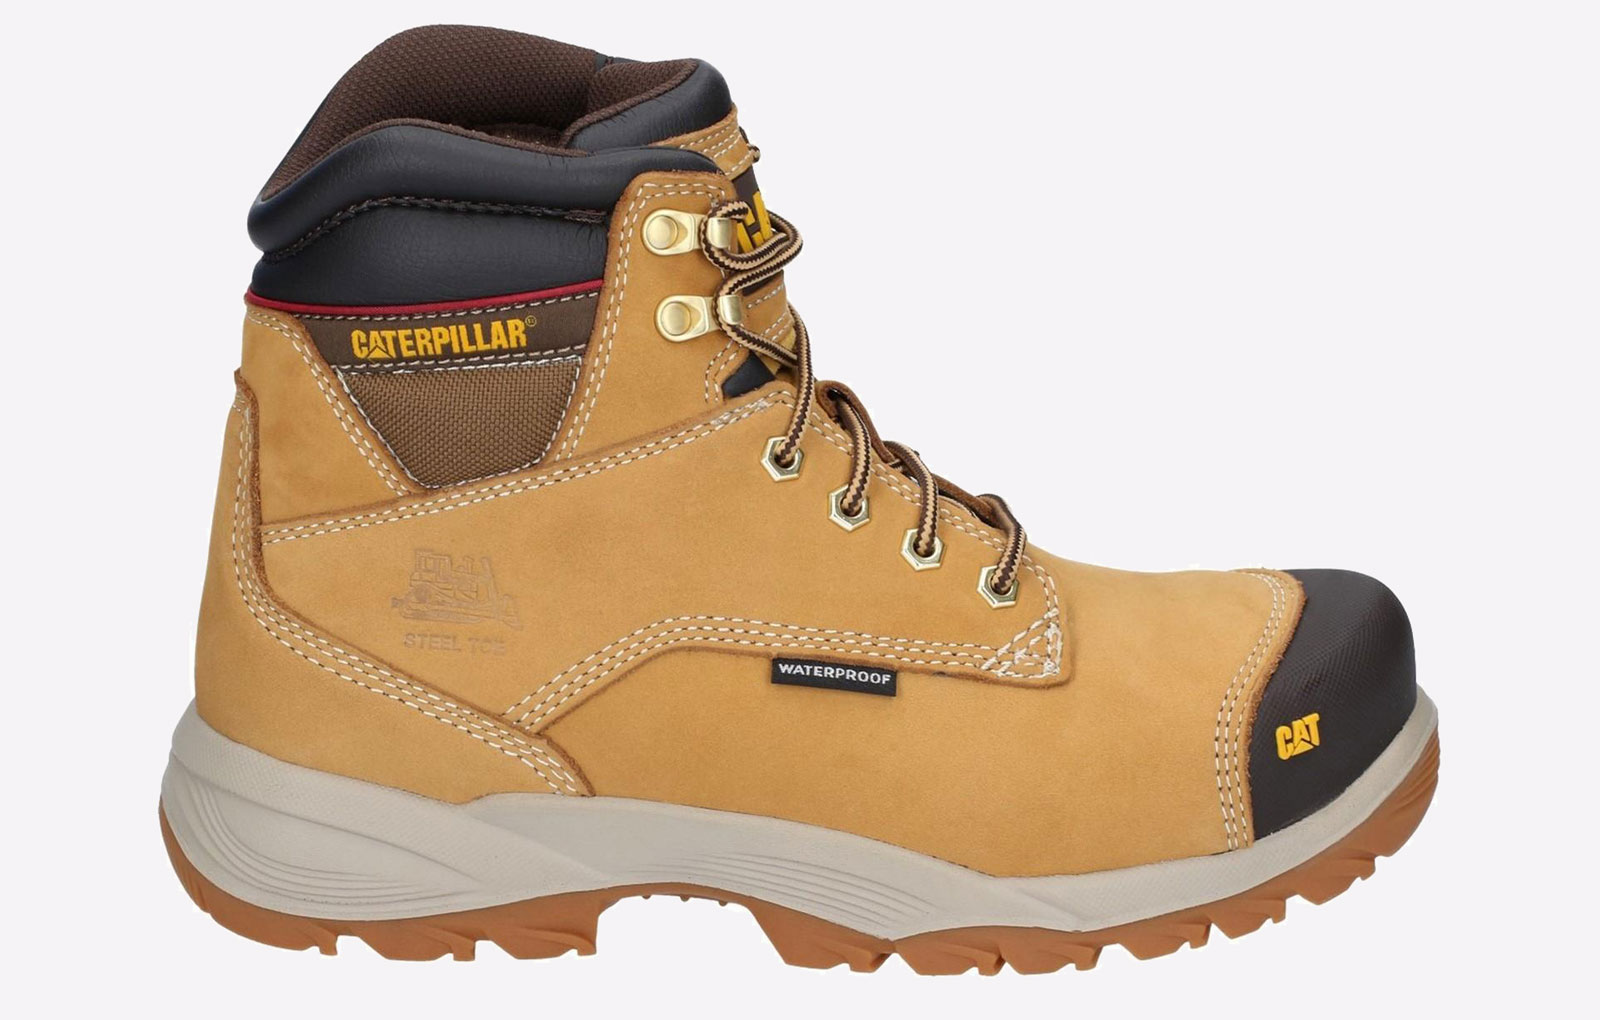 Caterpillar Spiro WATERPROOF Safety Boots Mens - GRD-29662-50265-11